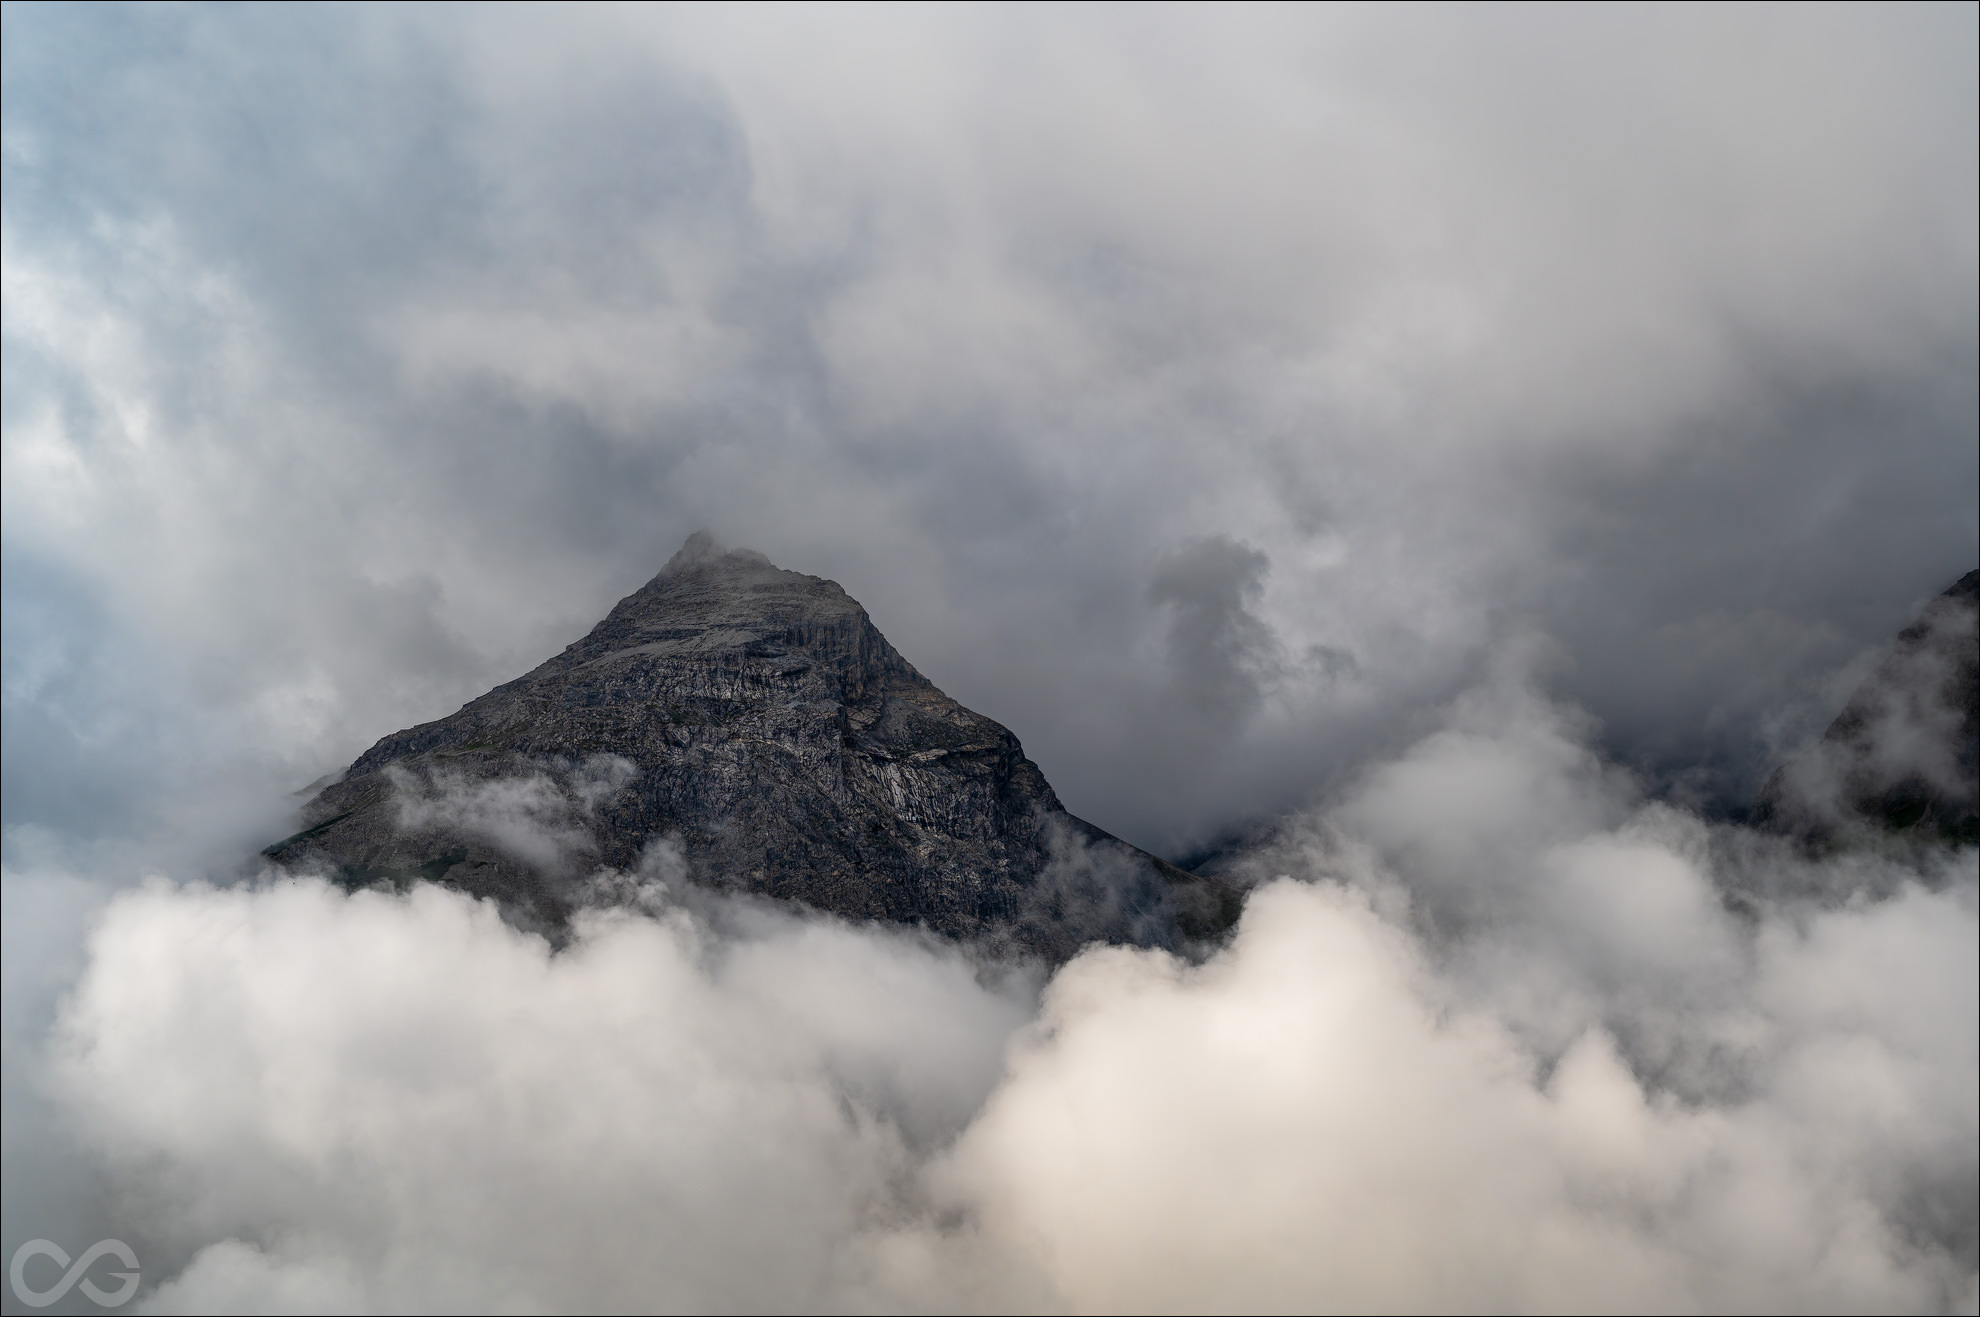 Manche Fotos kann man erst nachvollziehen, wenn man eine vergleichbare Szene selbst gesehen hat. Hier: Ein Berg mit Wolken, okay. Wie riesig und majestätisch das Ganze ist, und wie schnell dieser spezielle Moment vorbei war, kann man anhand dieses einen Fotos nicht erahnen. © Olaf Giermann